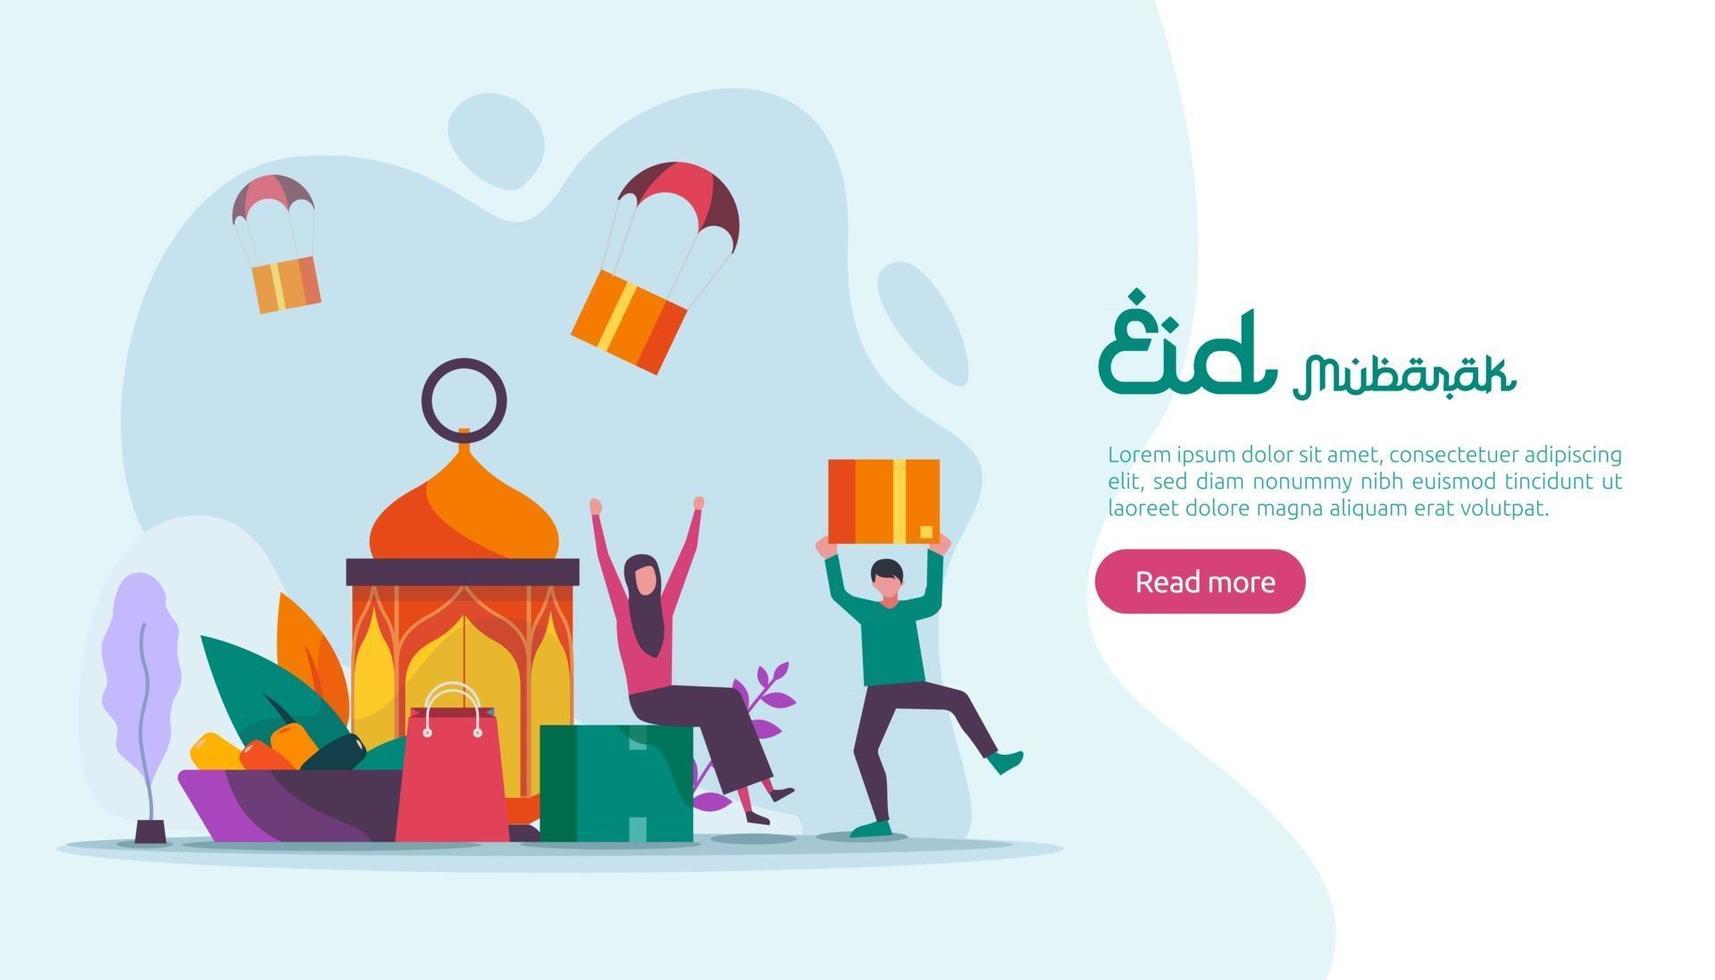 Islamisches Design-Illustrationskonzept für glückliche Eid Mubarak- oder Ramadan-Gruß mit Menschencharakter. Vorlage für Web-Landingpage, Banner, Präsentation, Social, Poster, Anzeige, Promotion oder Printmedien. vektor